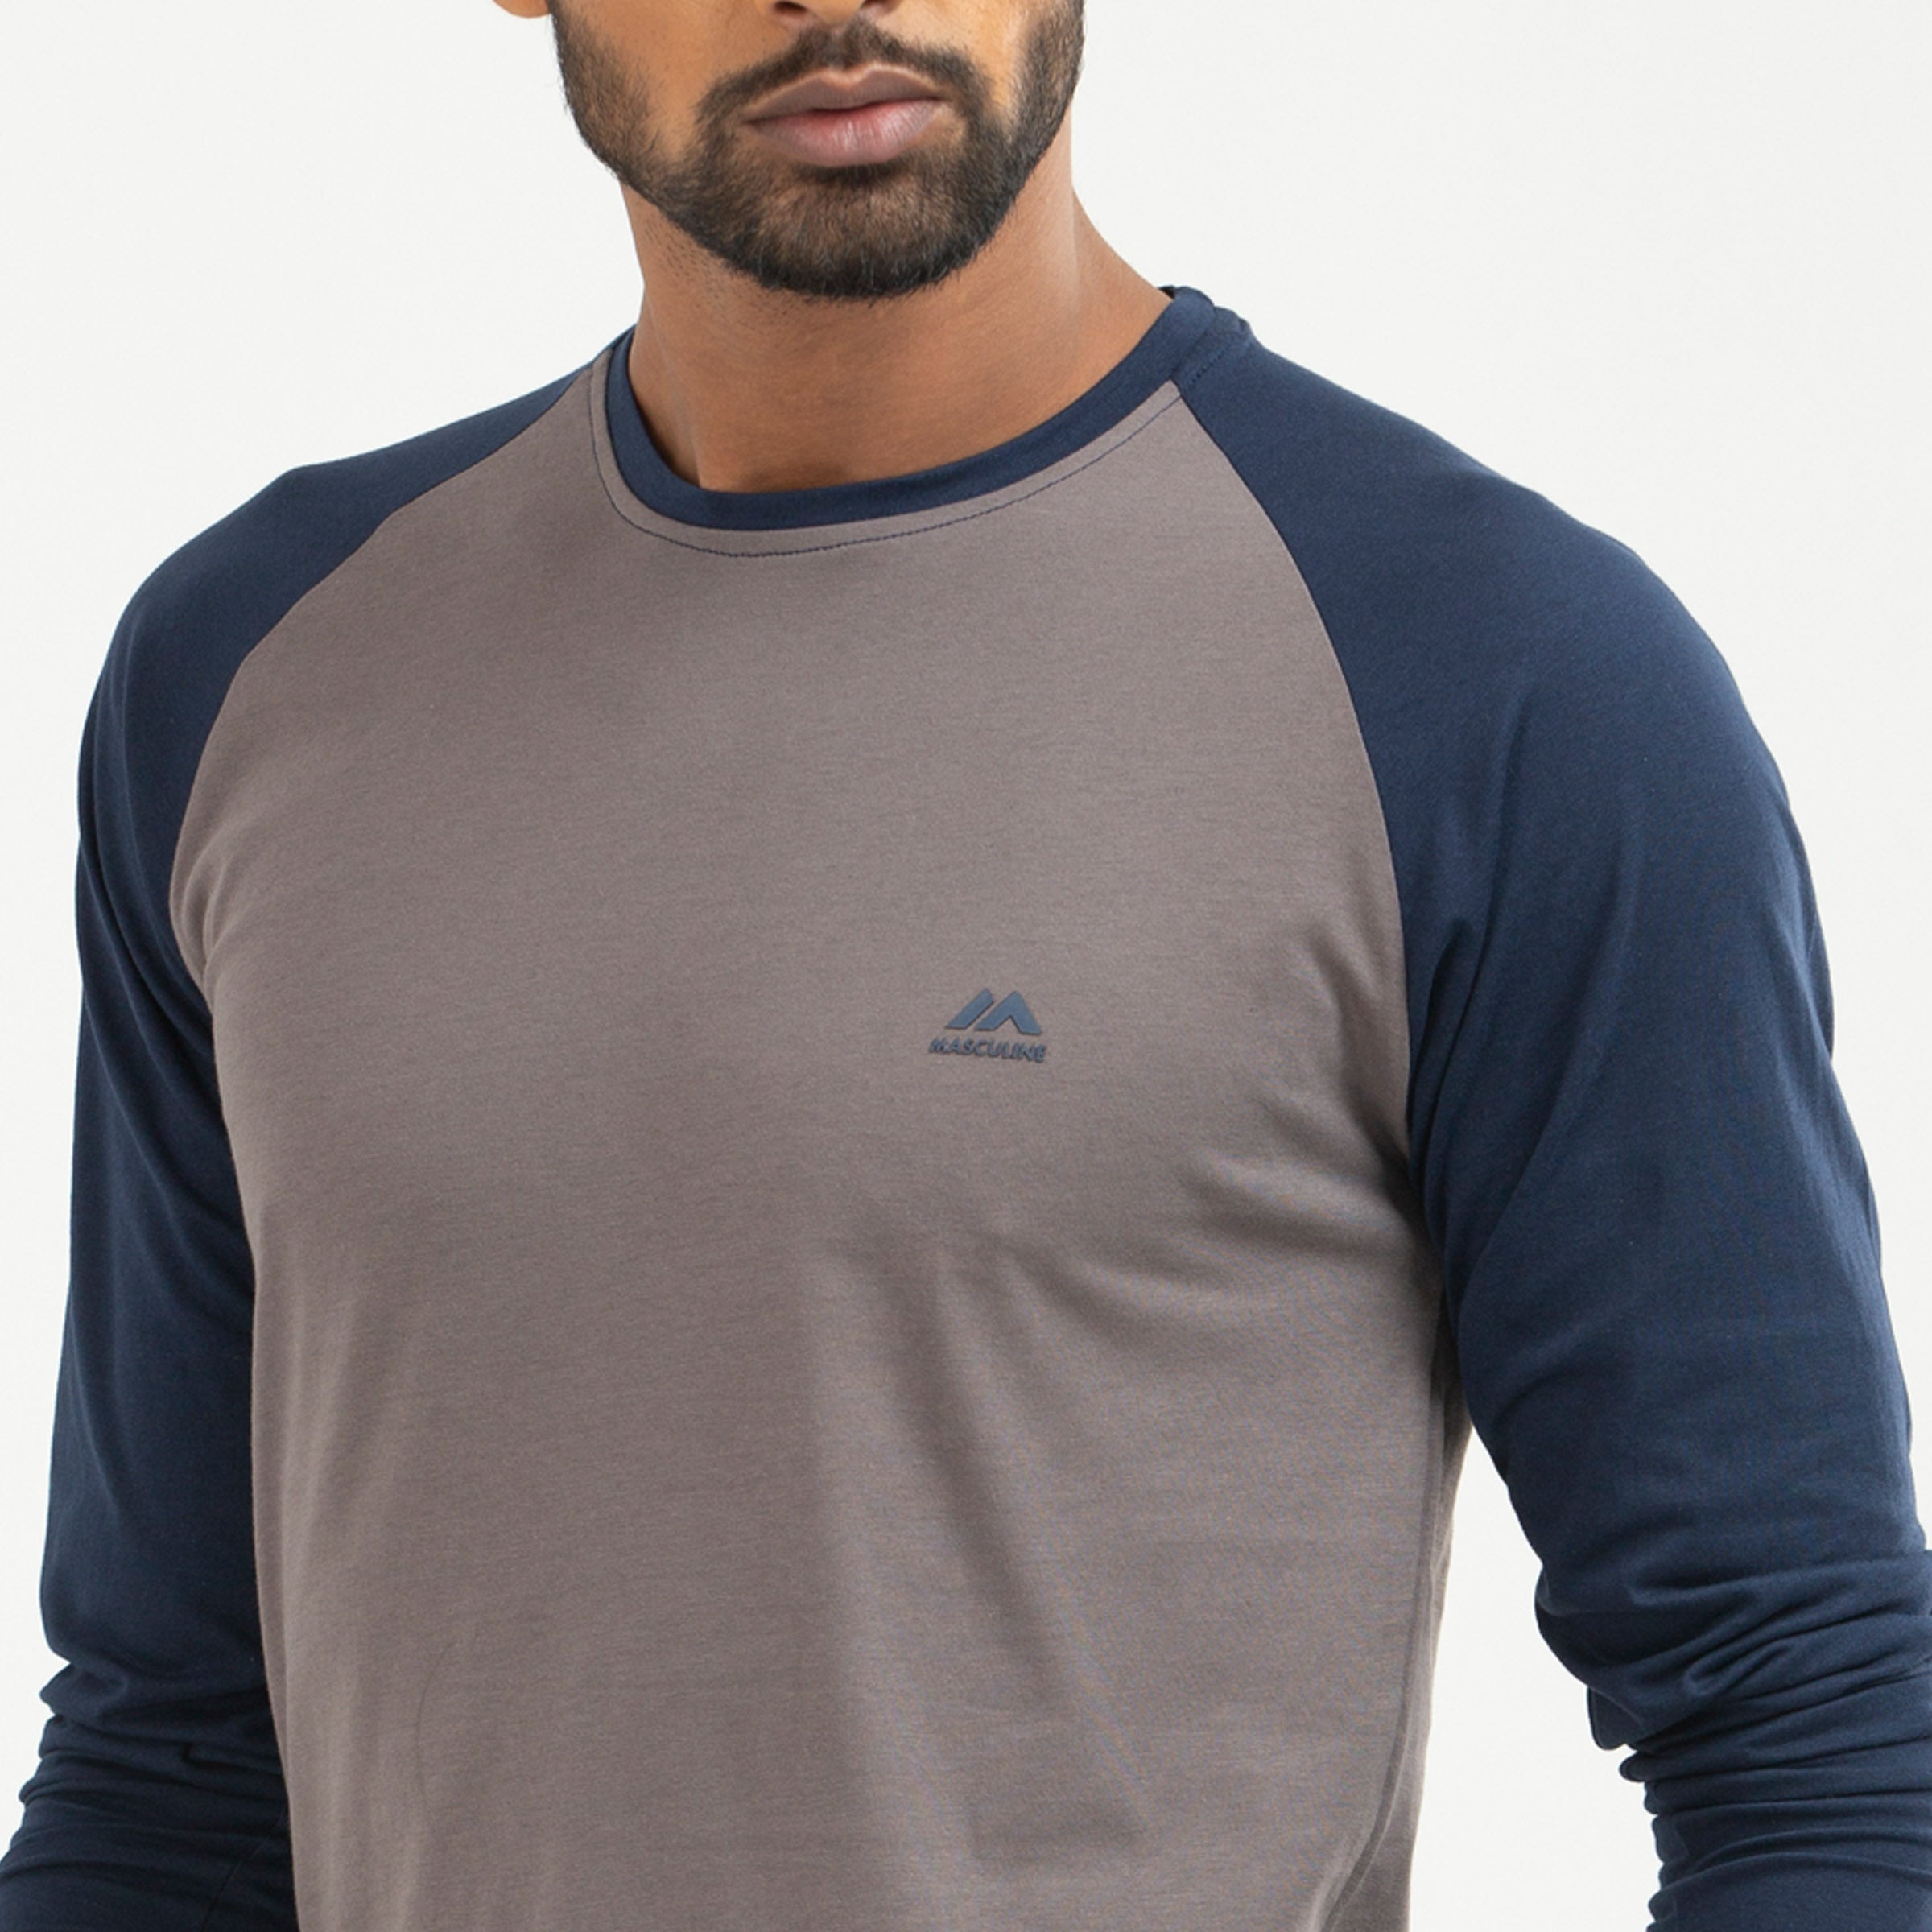 Raglan Long Sleeve T-shirt - charcoal & navy